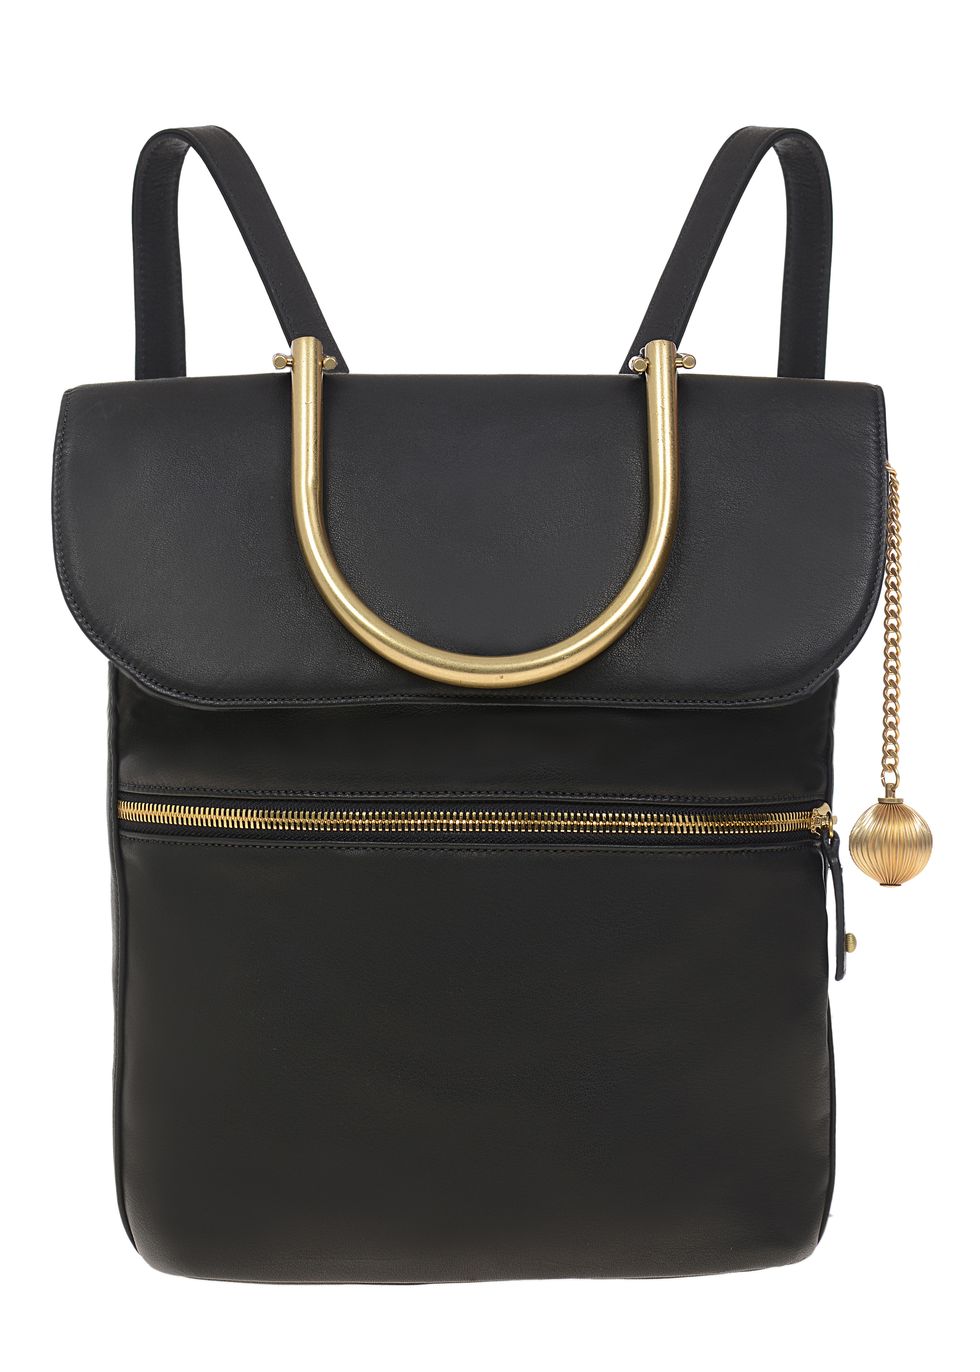 Handbag, Bag, Black, Fashion accessory, Product, Leather, Shoulder bag, Tote bag, Material property, Satchel, 